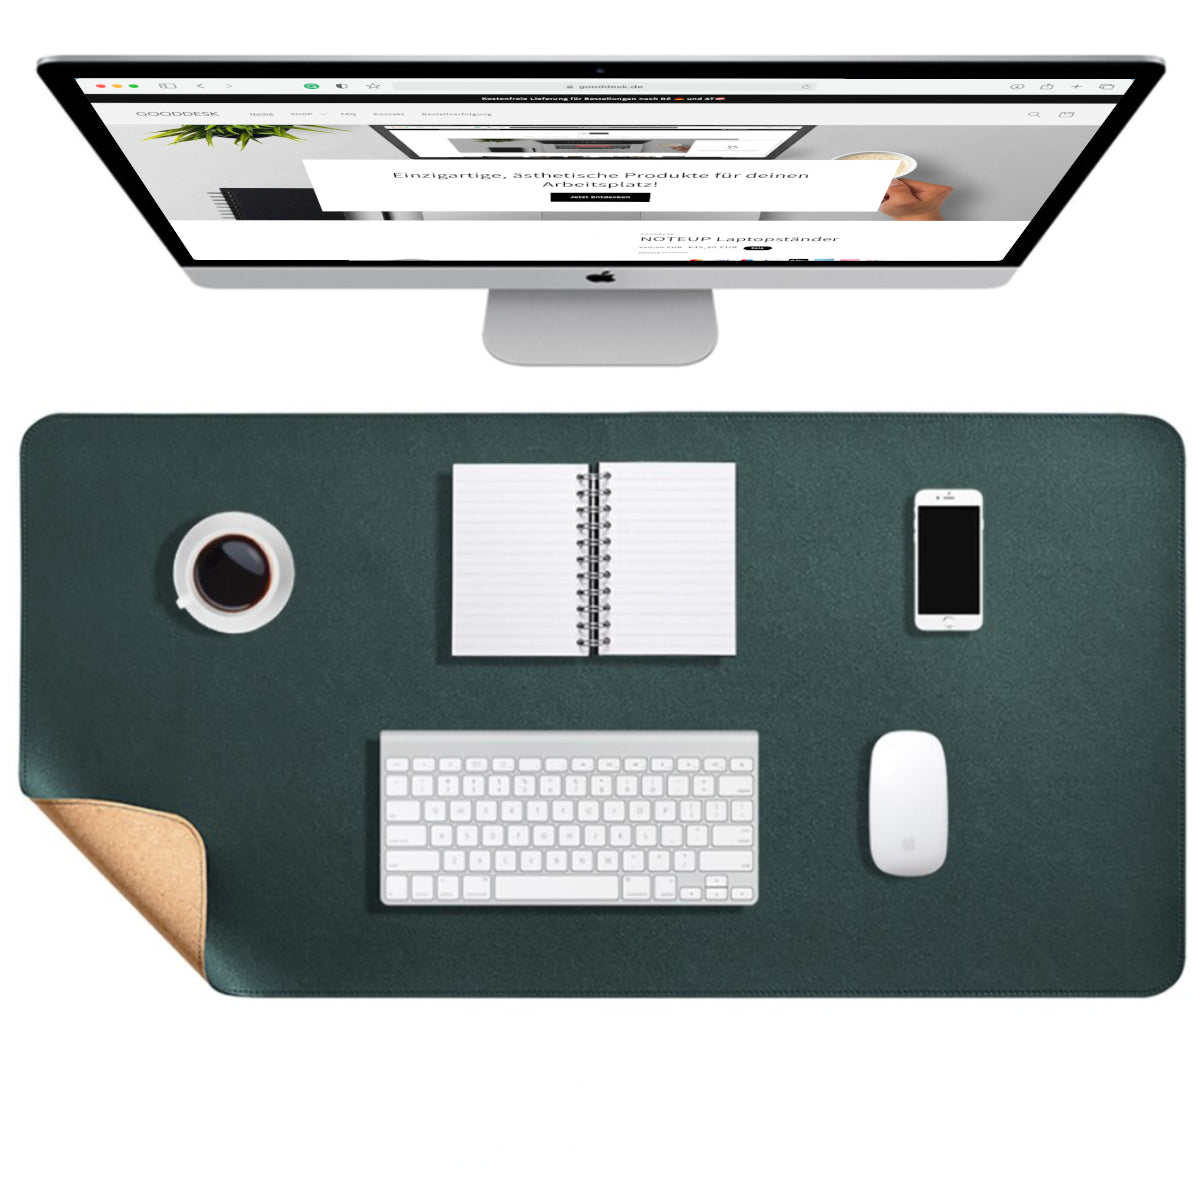 Korkmatte Kork Schreibtischunterlage nachhaltig Eingangsbild shoppen gooddesk dunkelgrün Wählbild